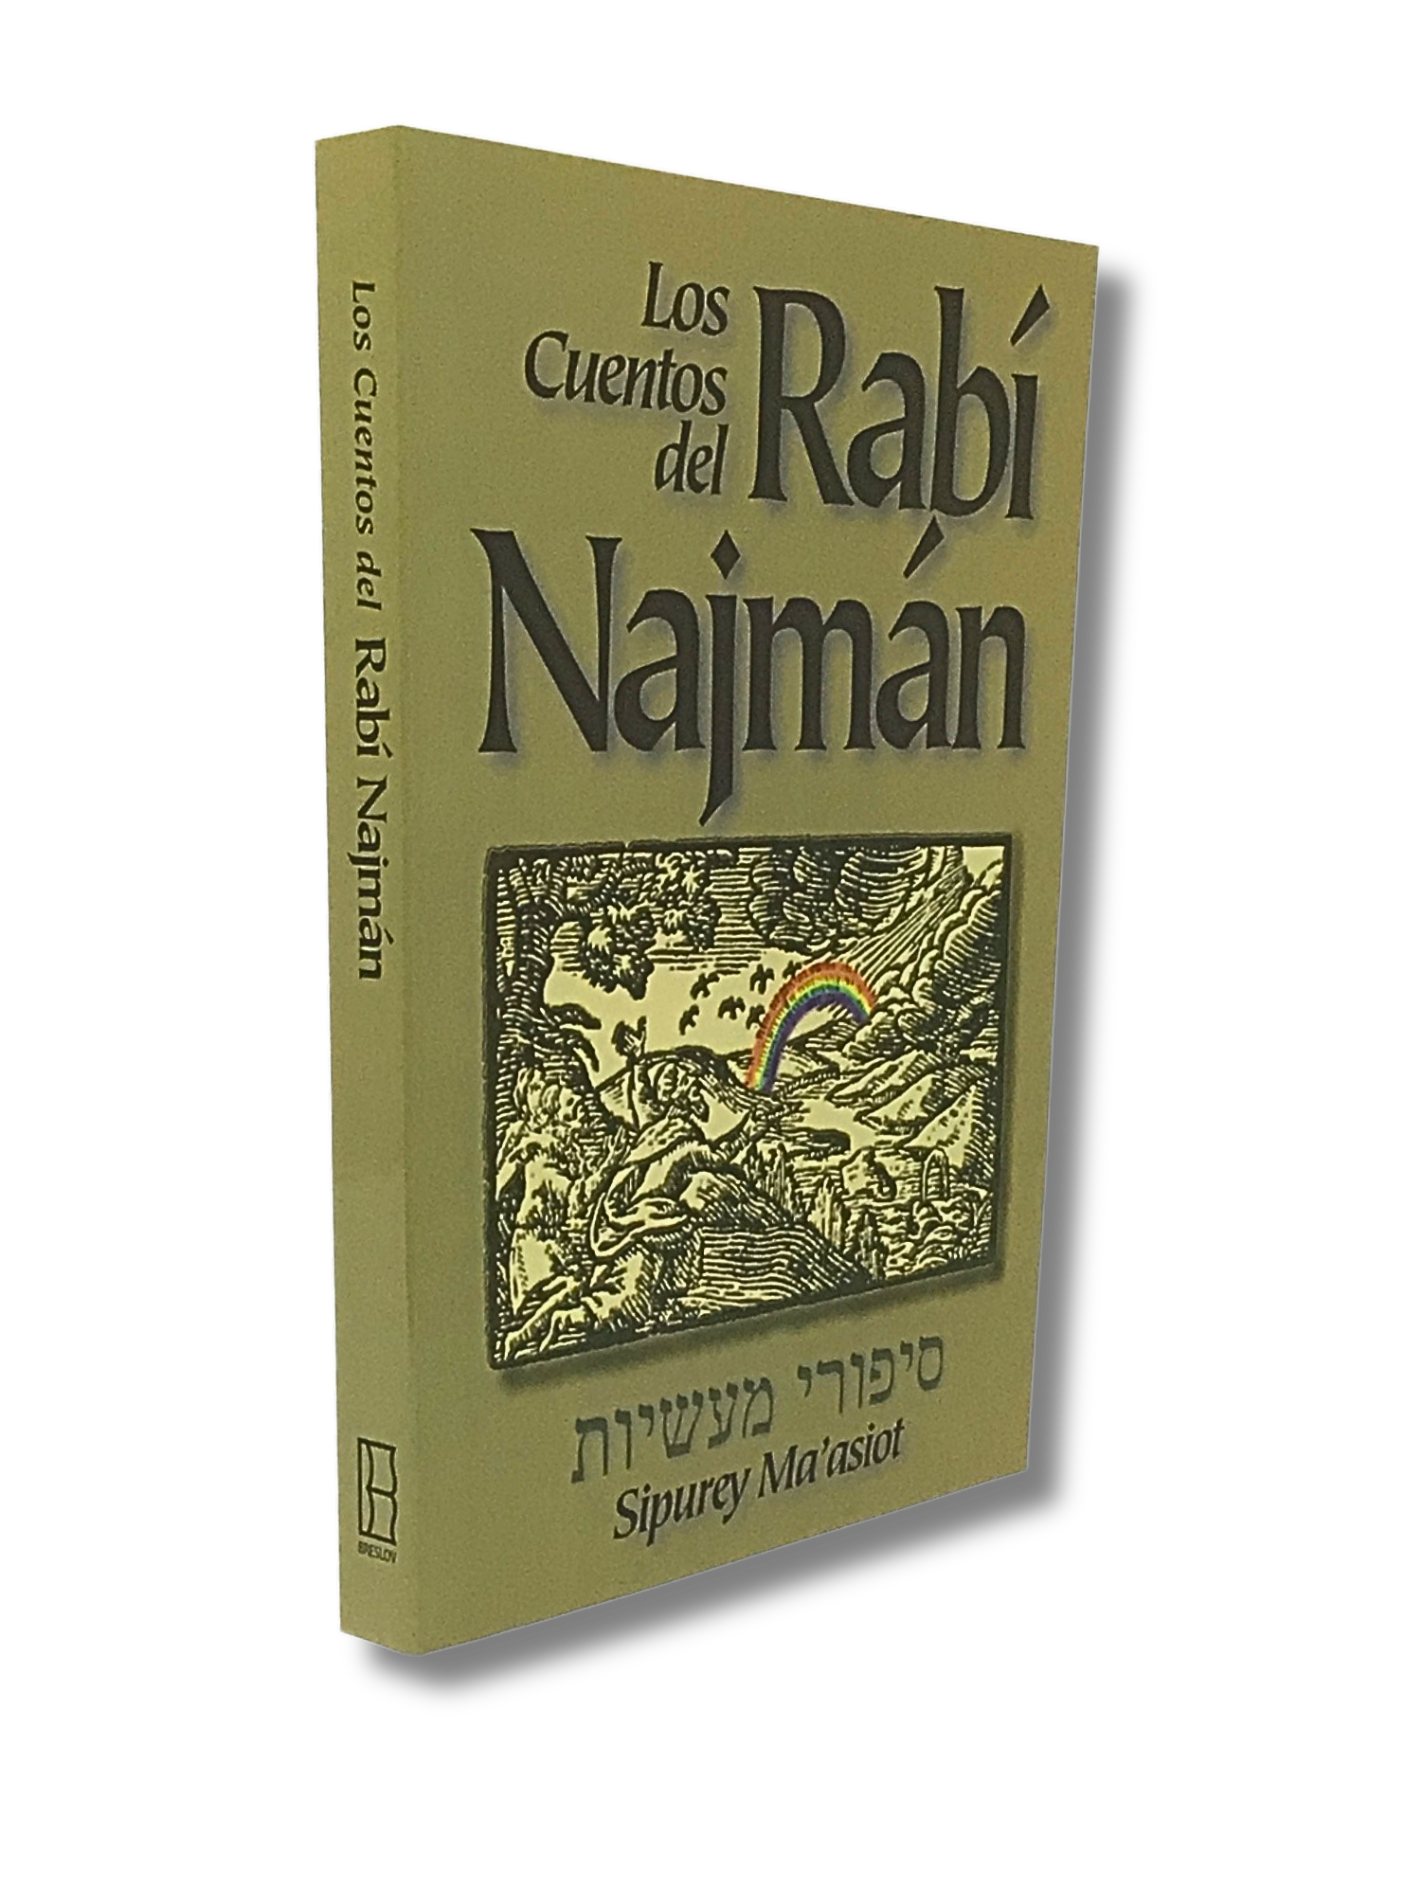 Los Cuentos del Rabi Najman